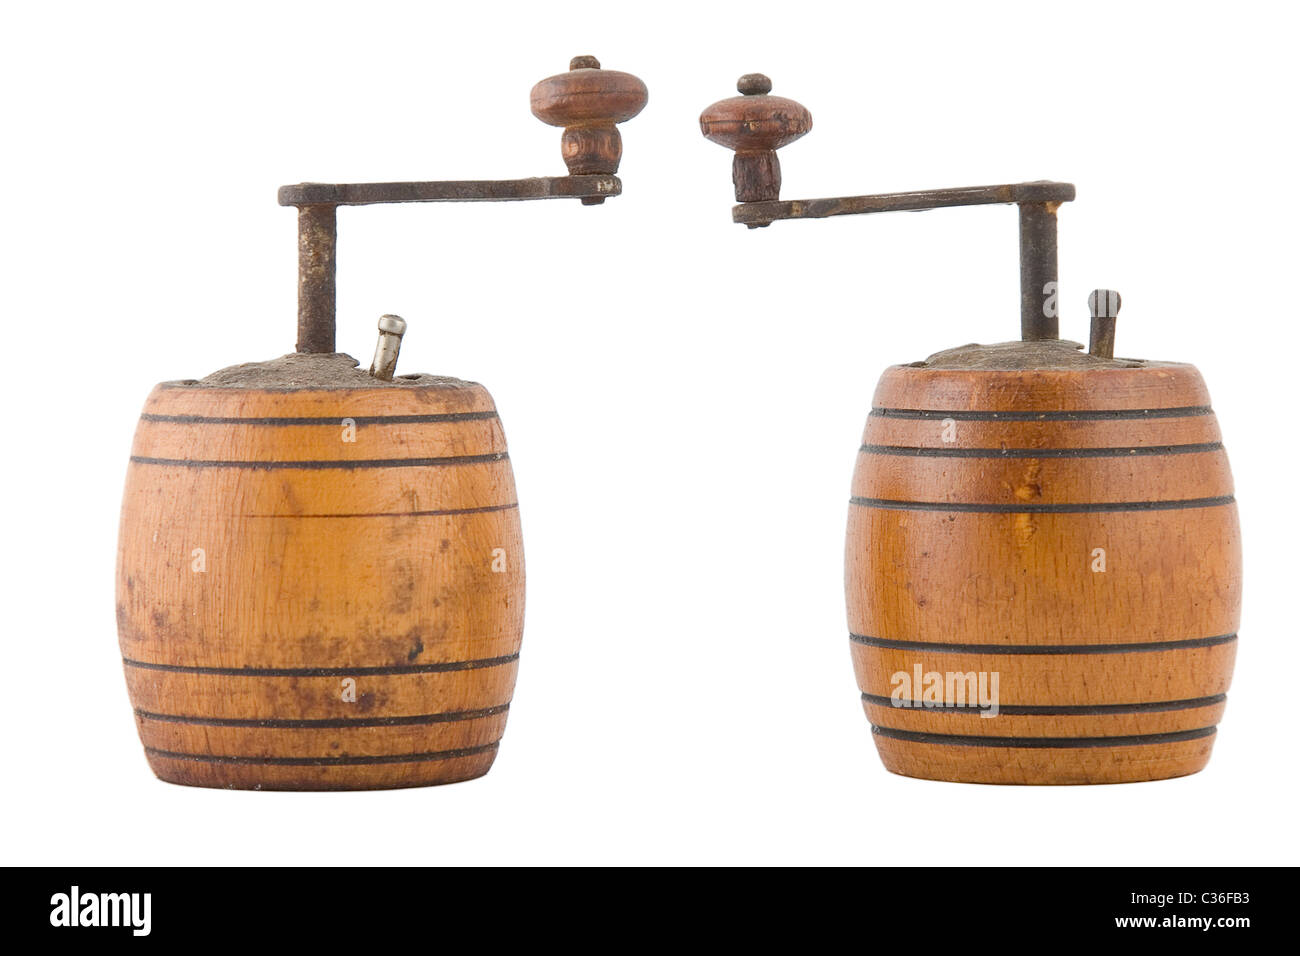 Deux vintage brown grinder en bois, faite, sur fond blanc Banque D'Images